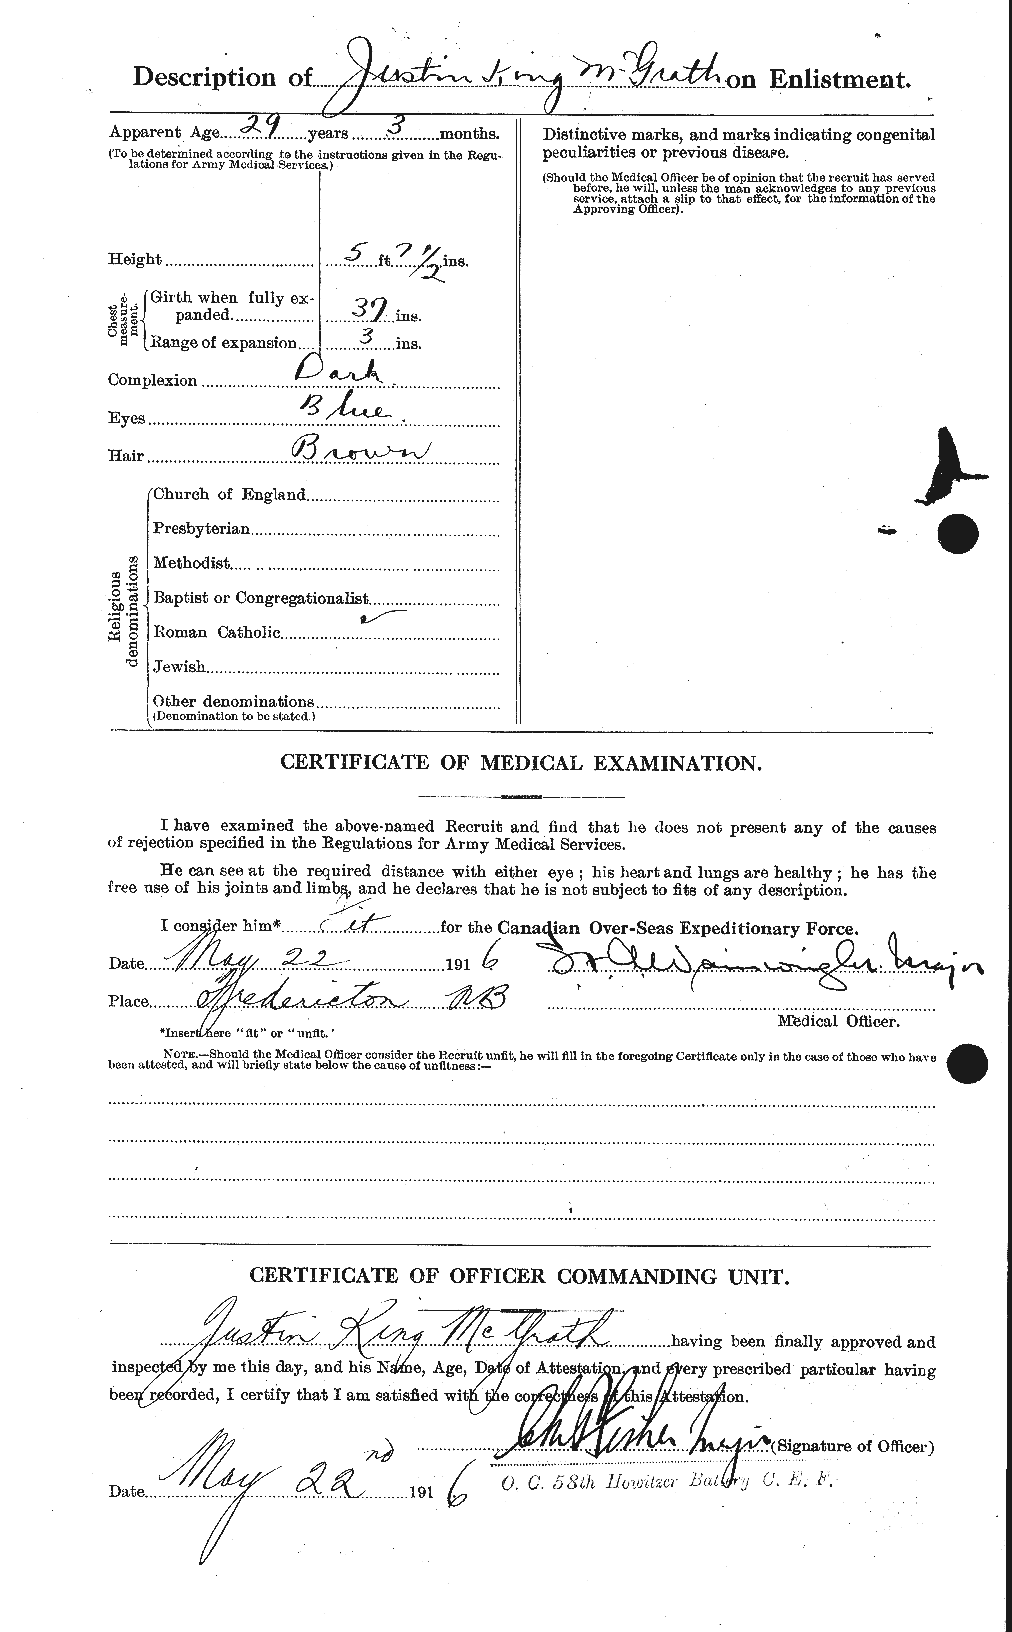 Dossiers du Personnel de la Première Guerre mondiale - CEC 523629b